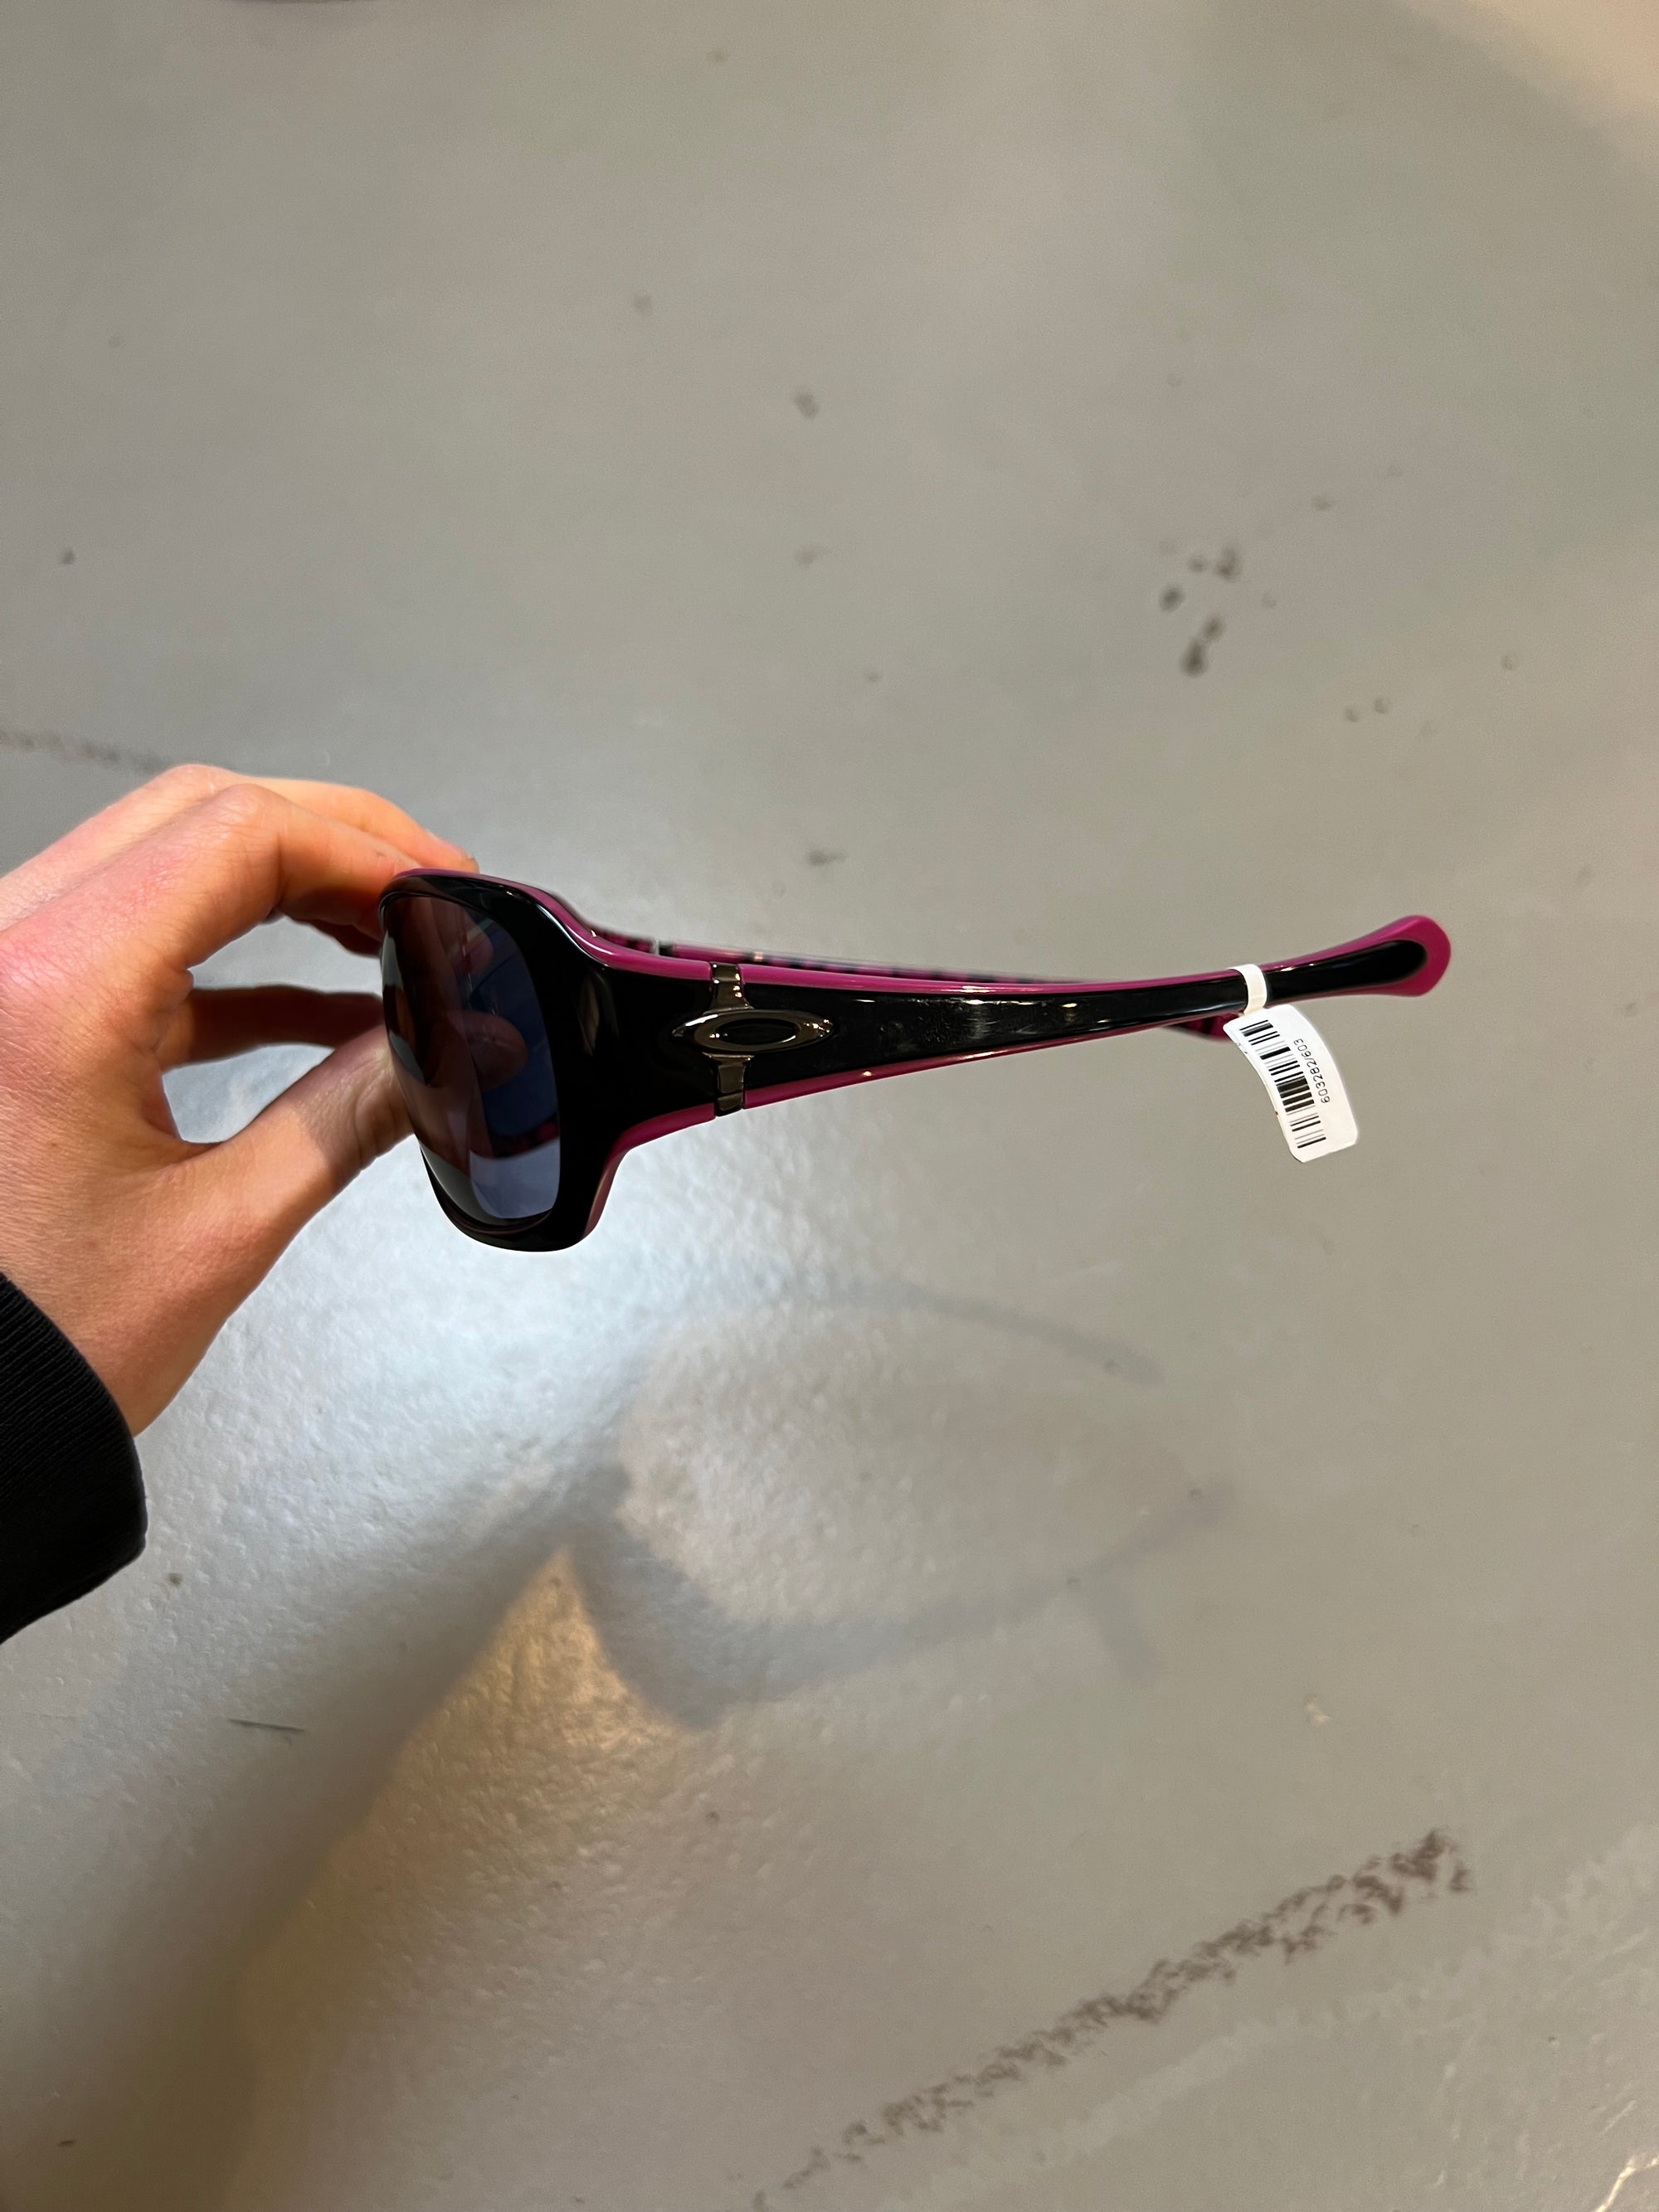 Produkt bild der Oakley Sunglasses Black Pink von der Seite